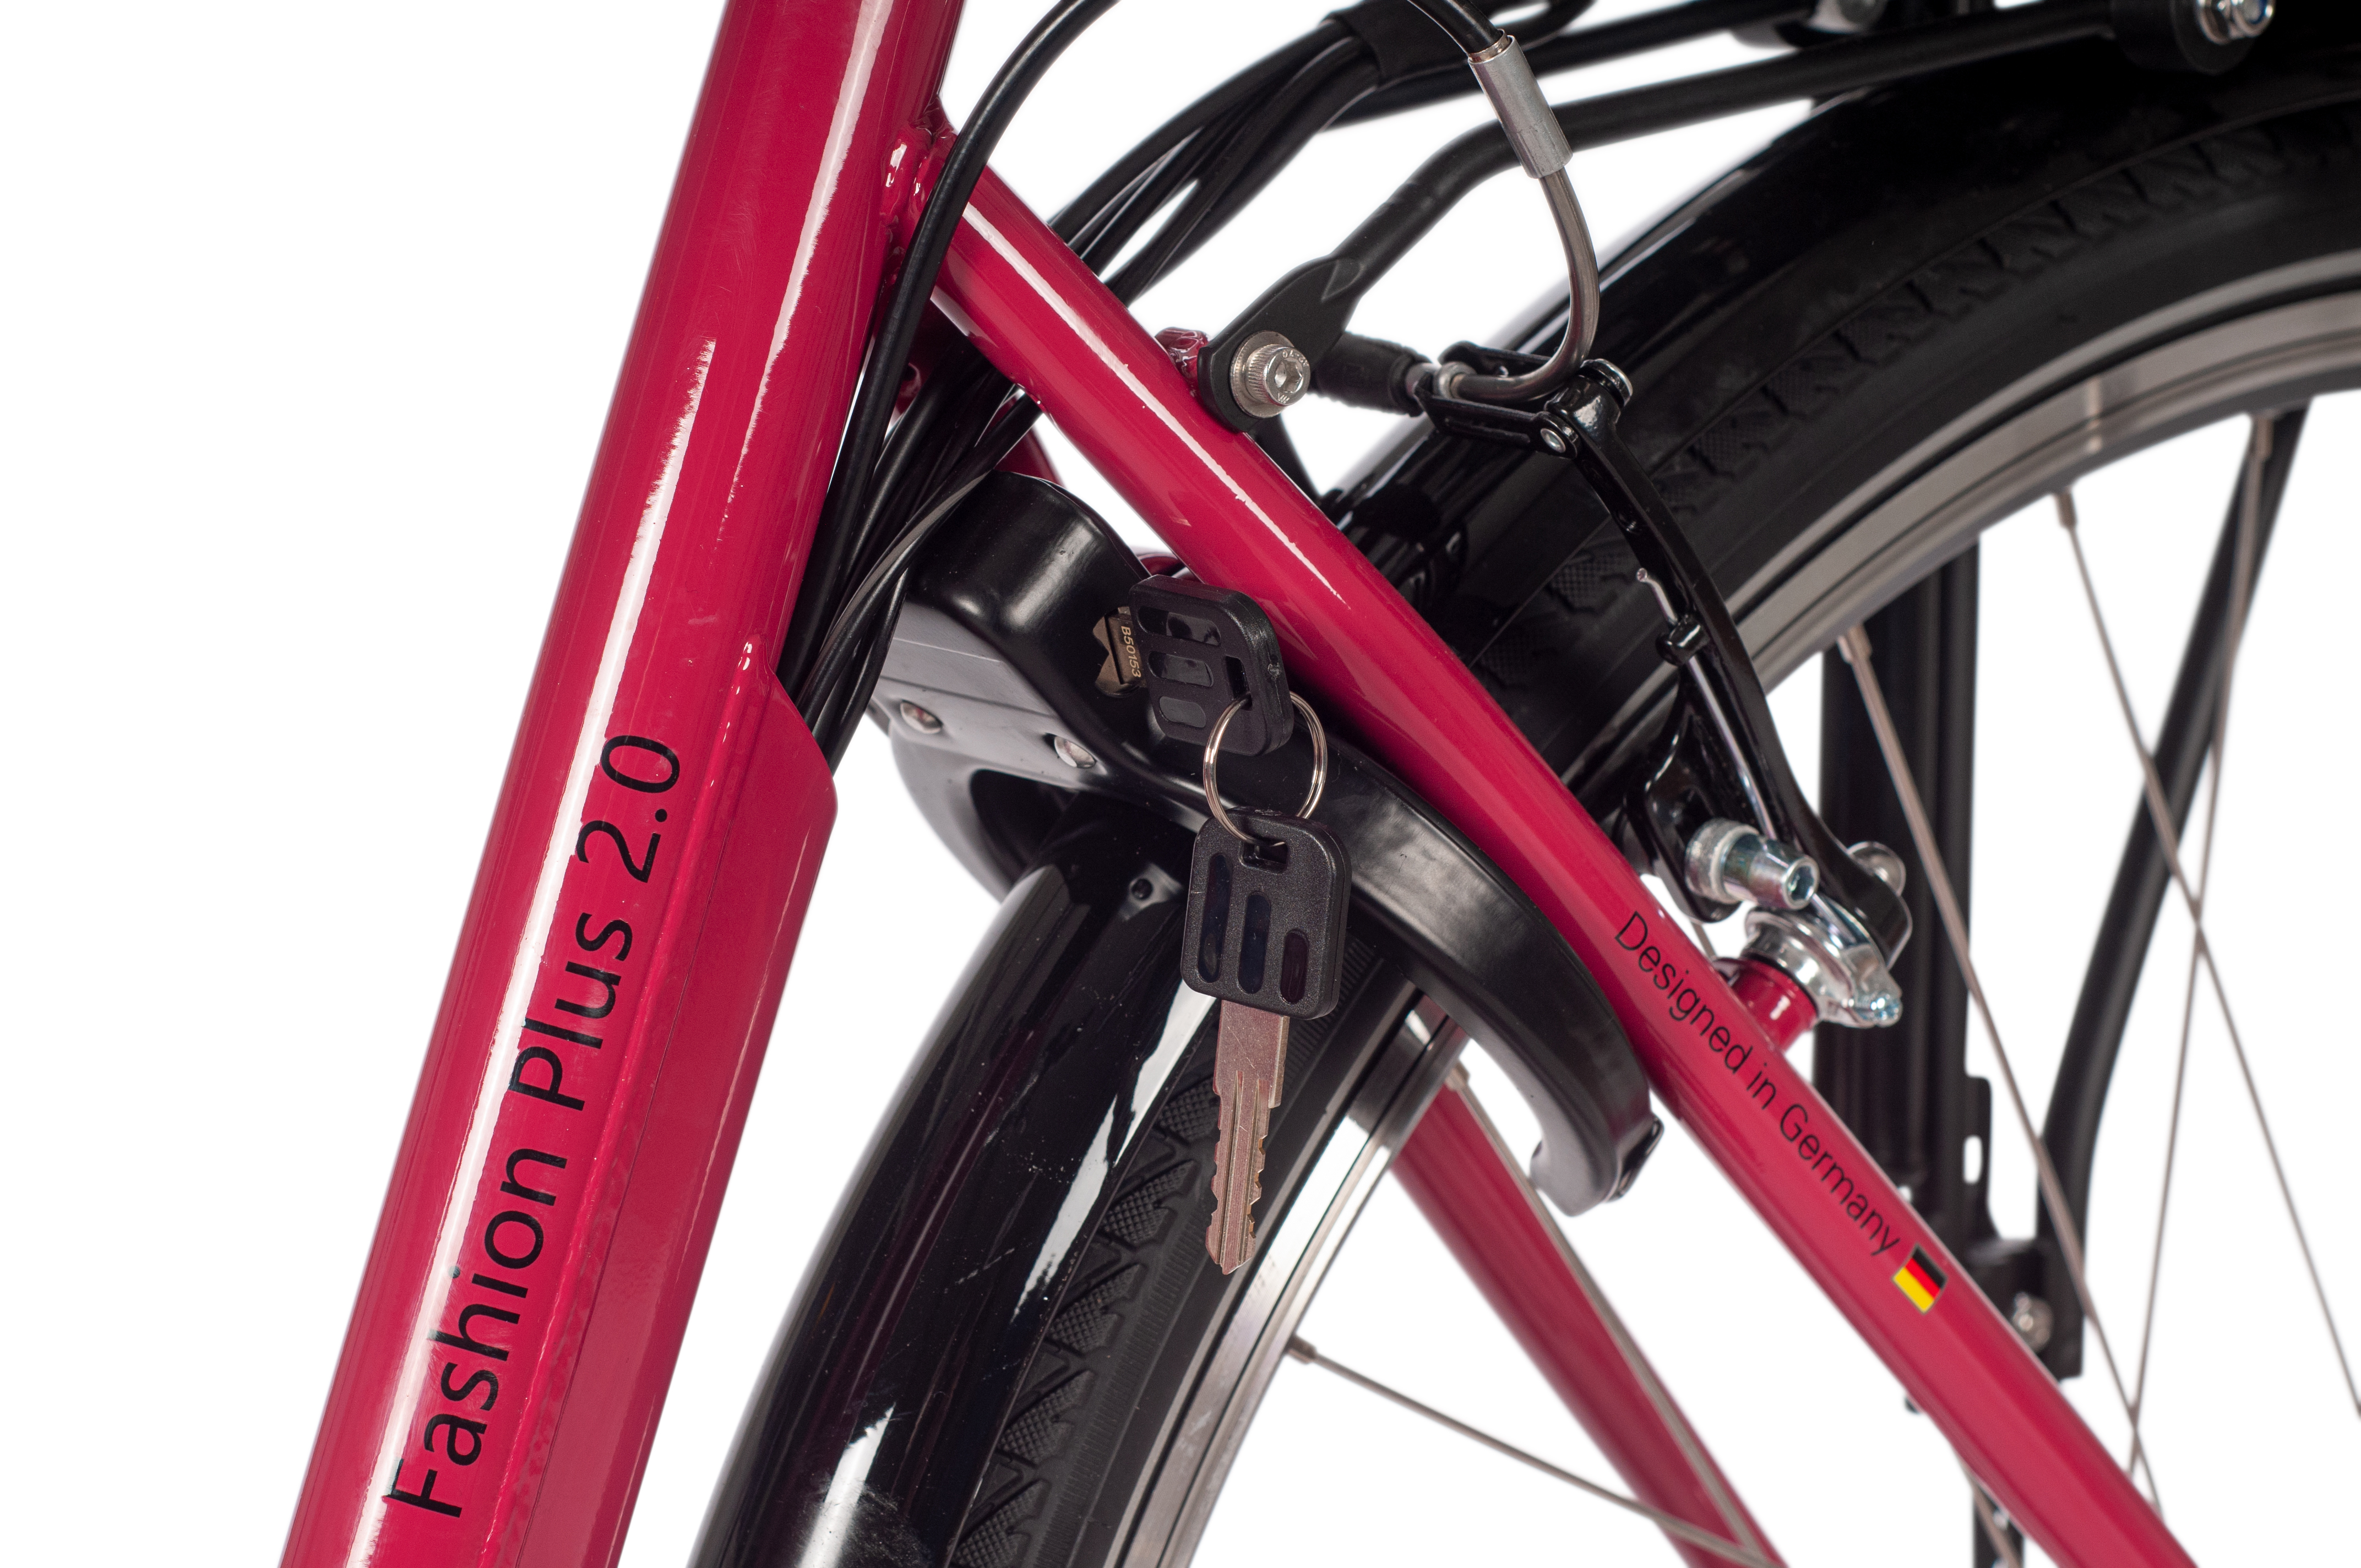 SAXONETTE Fashion Plus 2.0 E-Citybike Classic B-Ware gebraucht Rücktrittbremse Vorderradmotor 7 Gang Wave cranberry glänzend